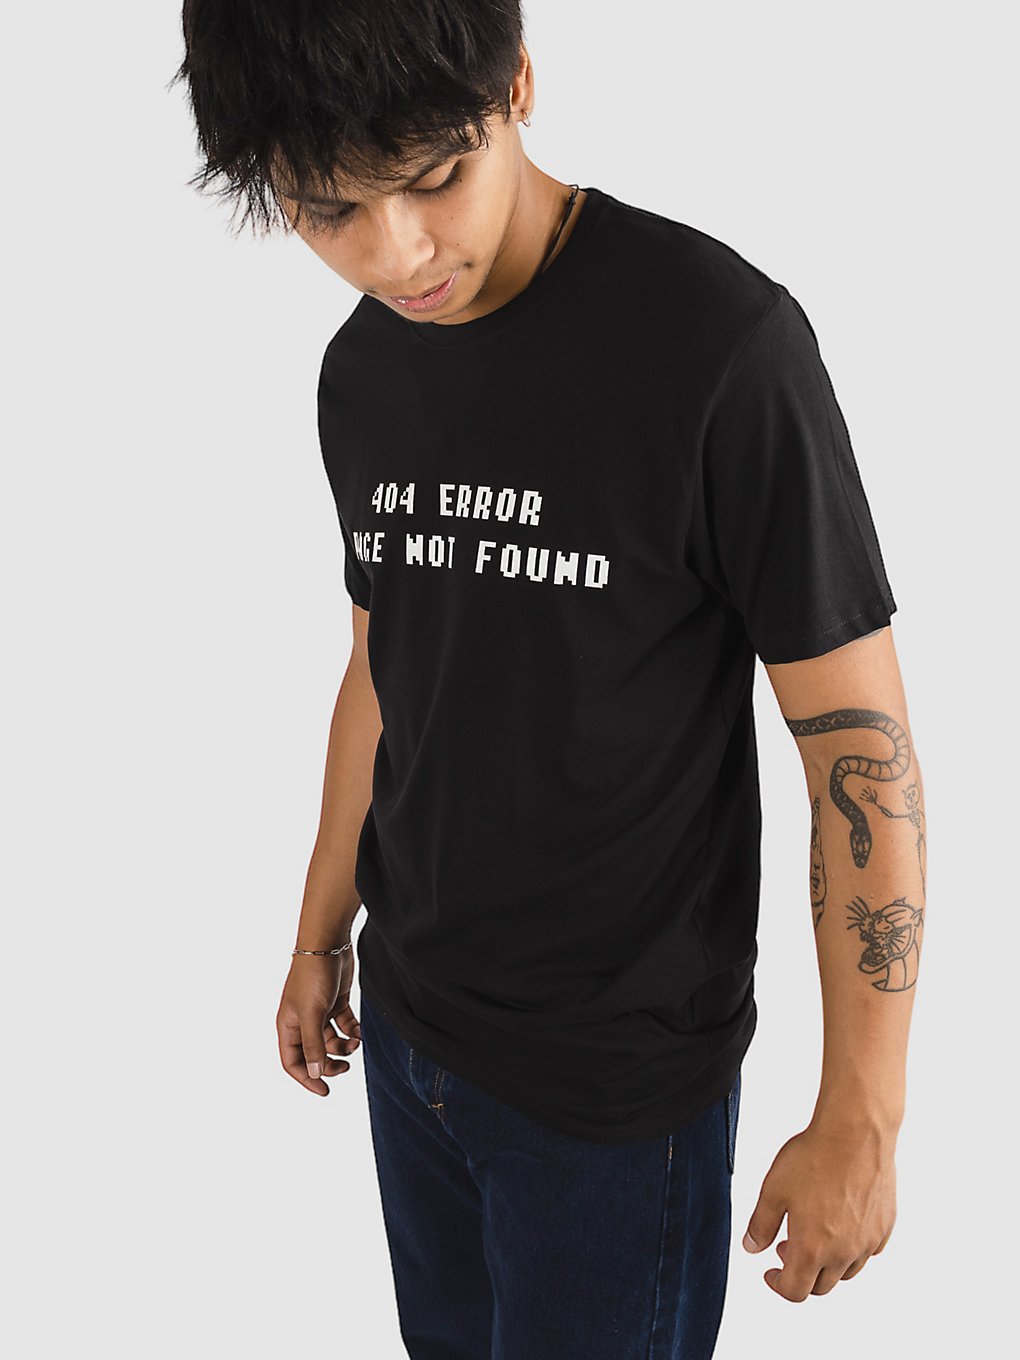 A.Lab 404 Error T-Shirt black kaufen